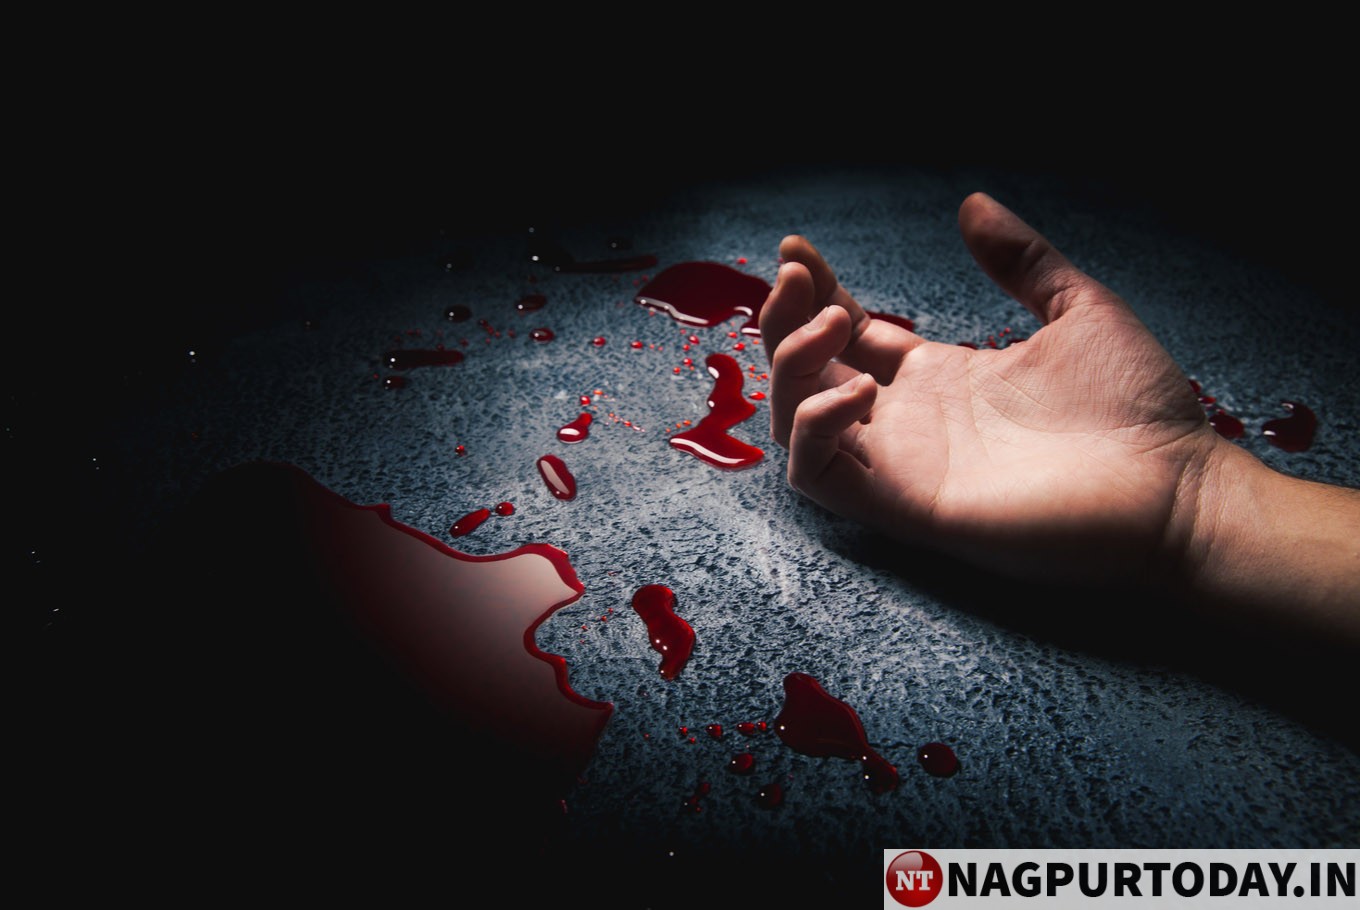 https://www.nagpurtoday.in/wp-content/uploads/2020/01/Murder-1.jpg